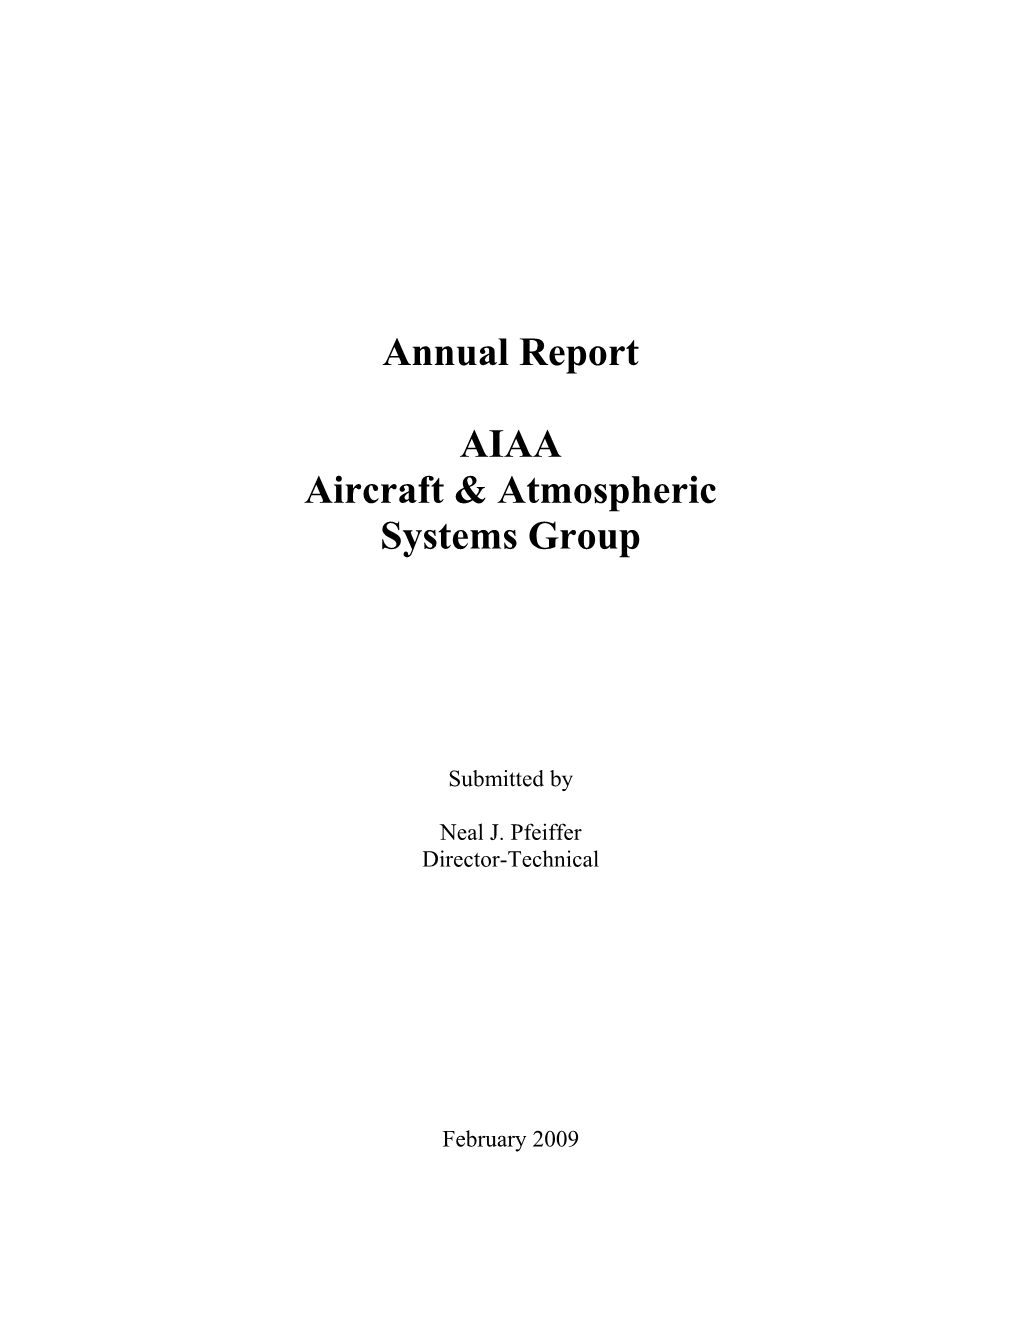 Aircraft & Atmospheric